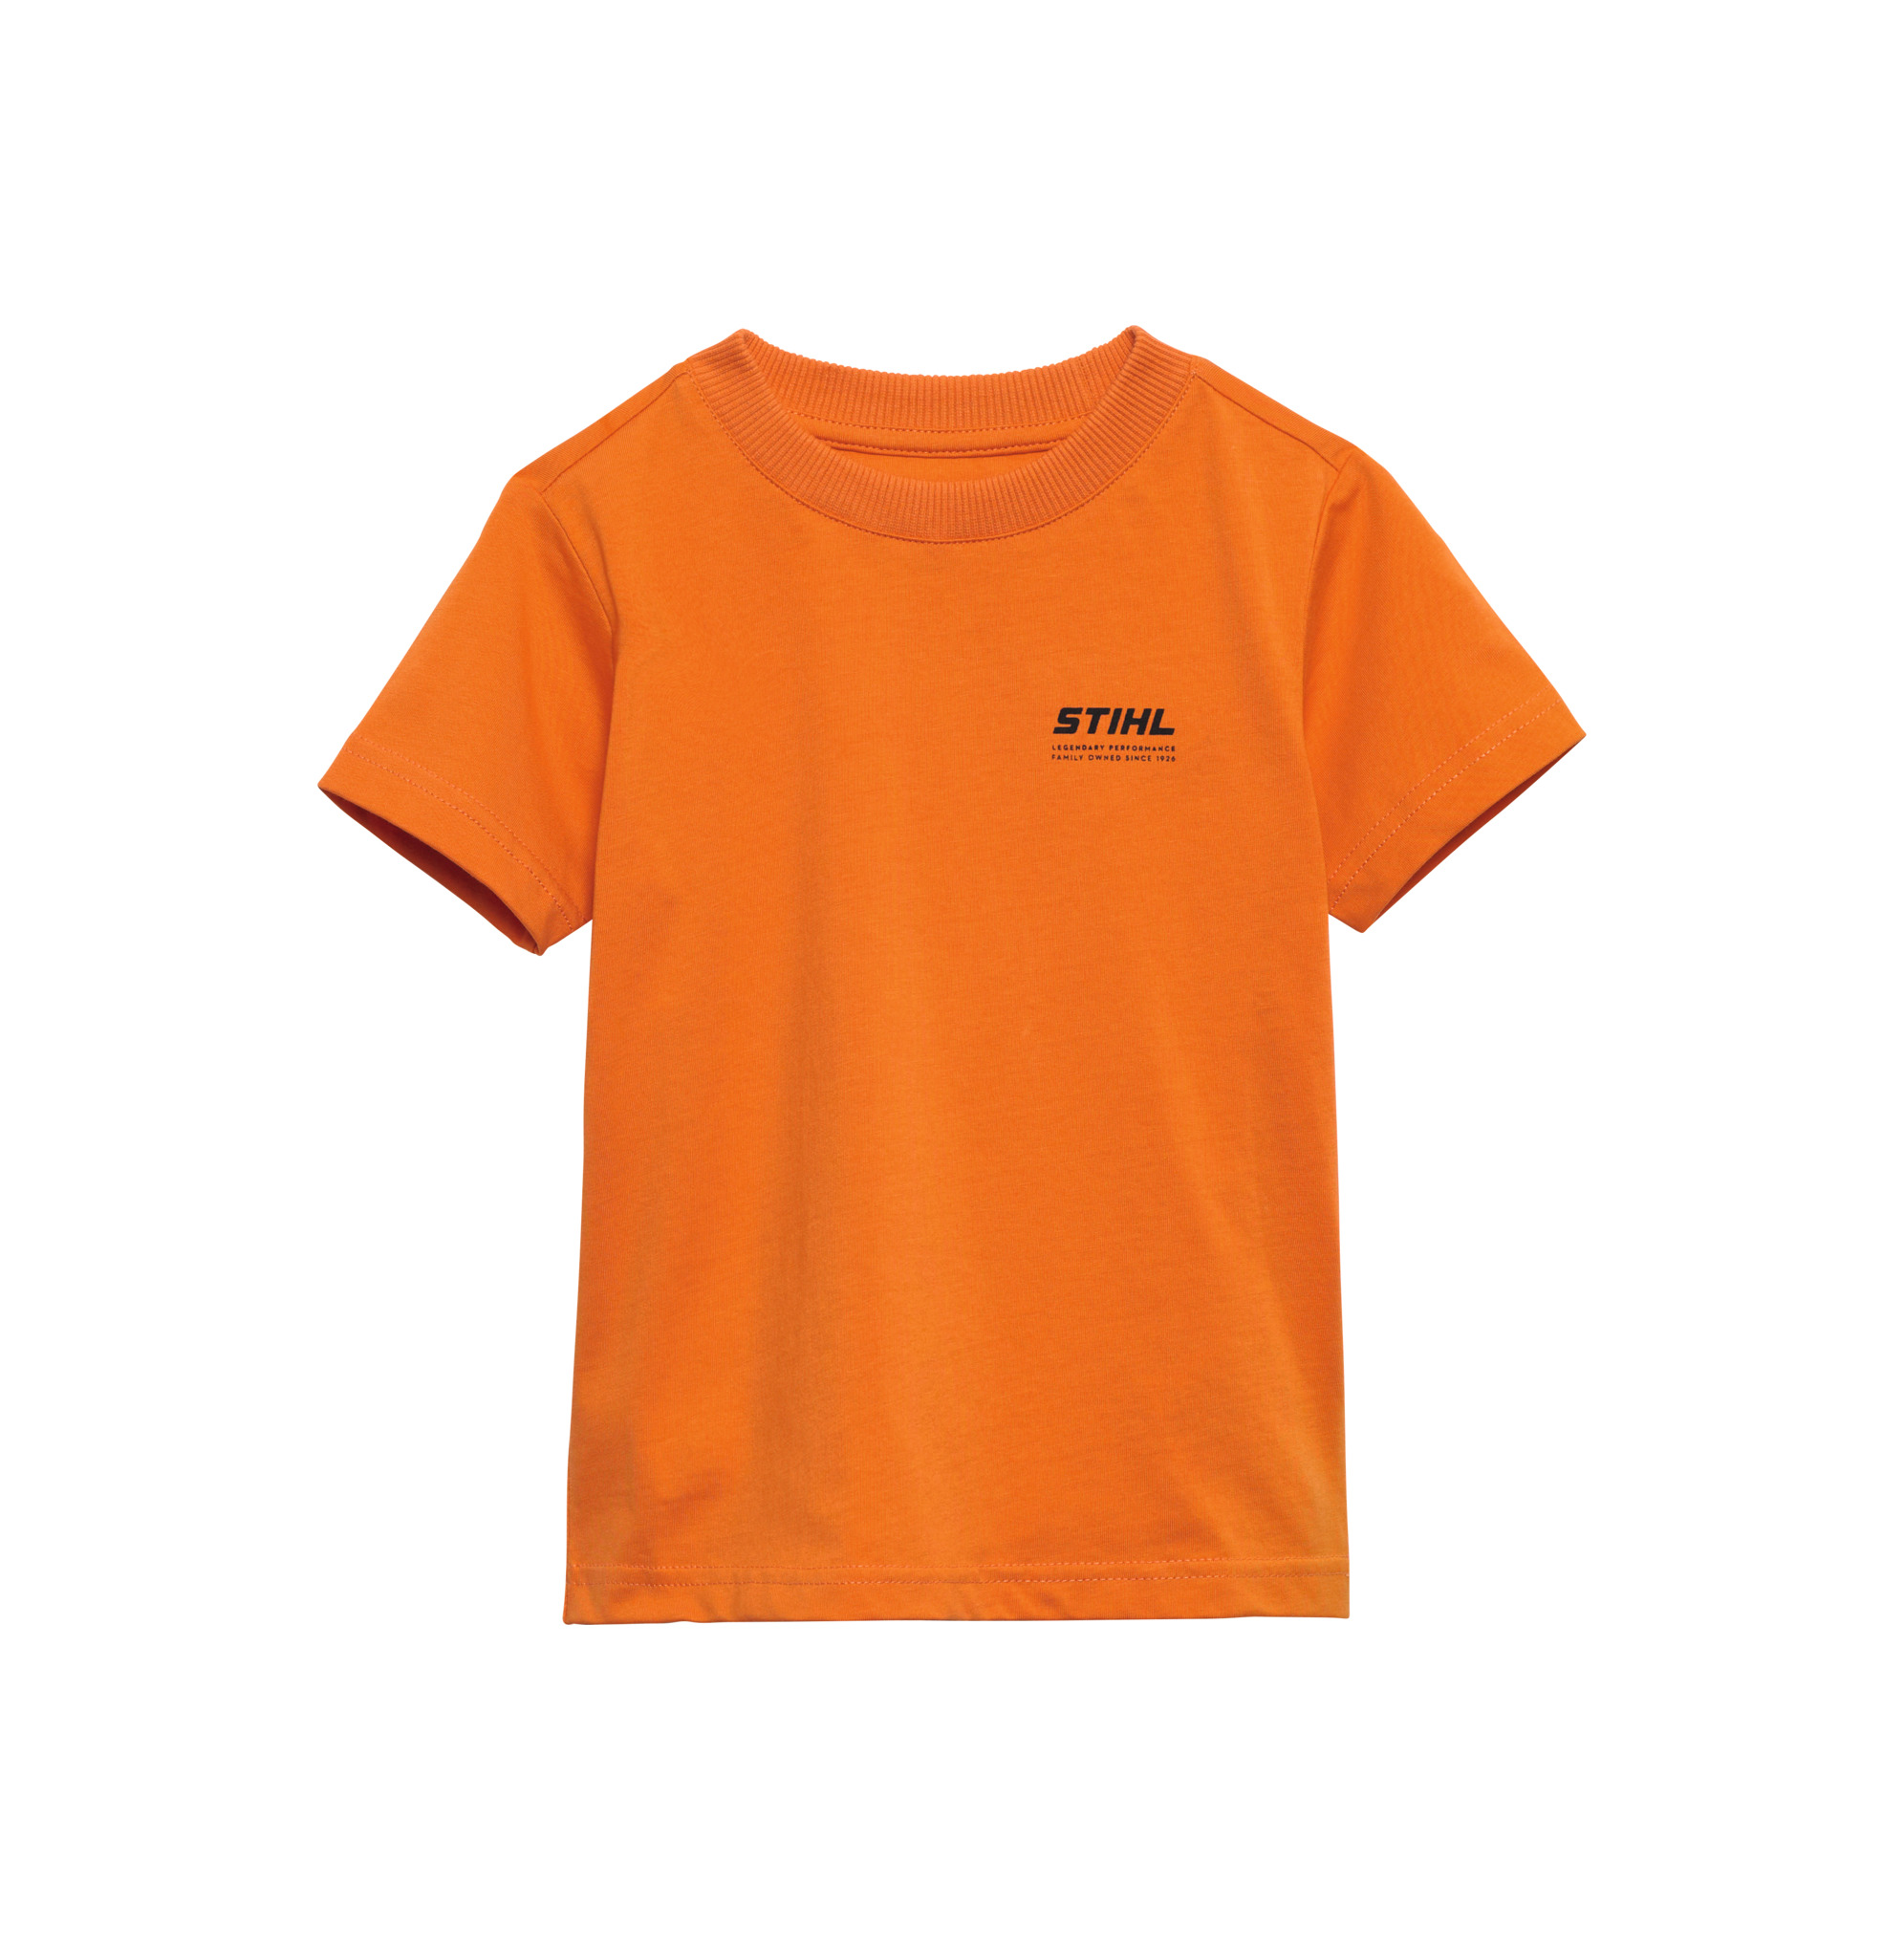 T-Shirt KIDS Orange